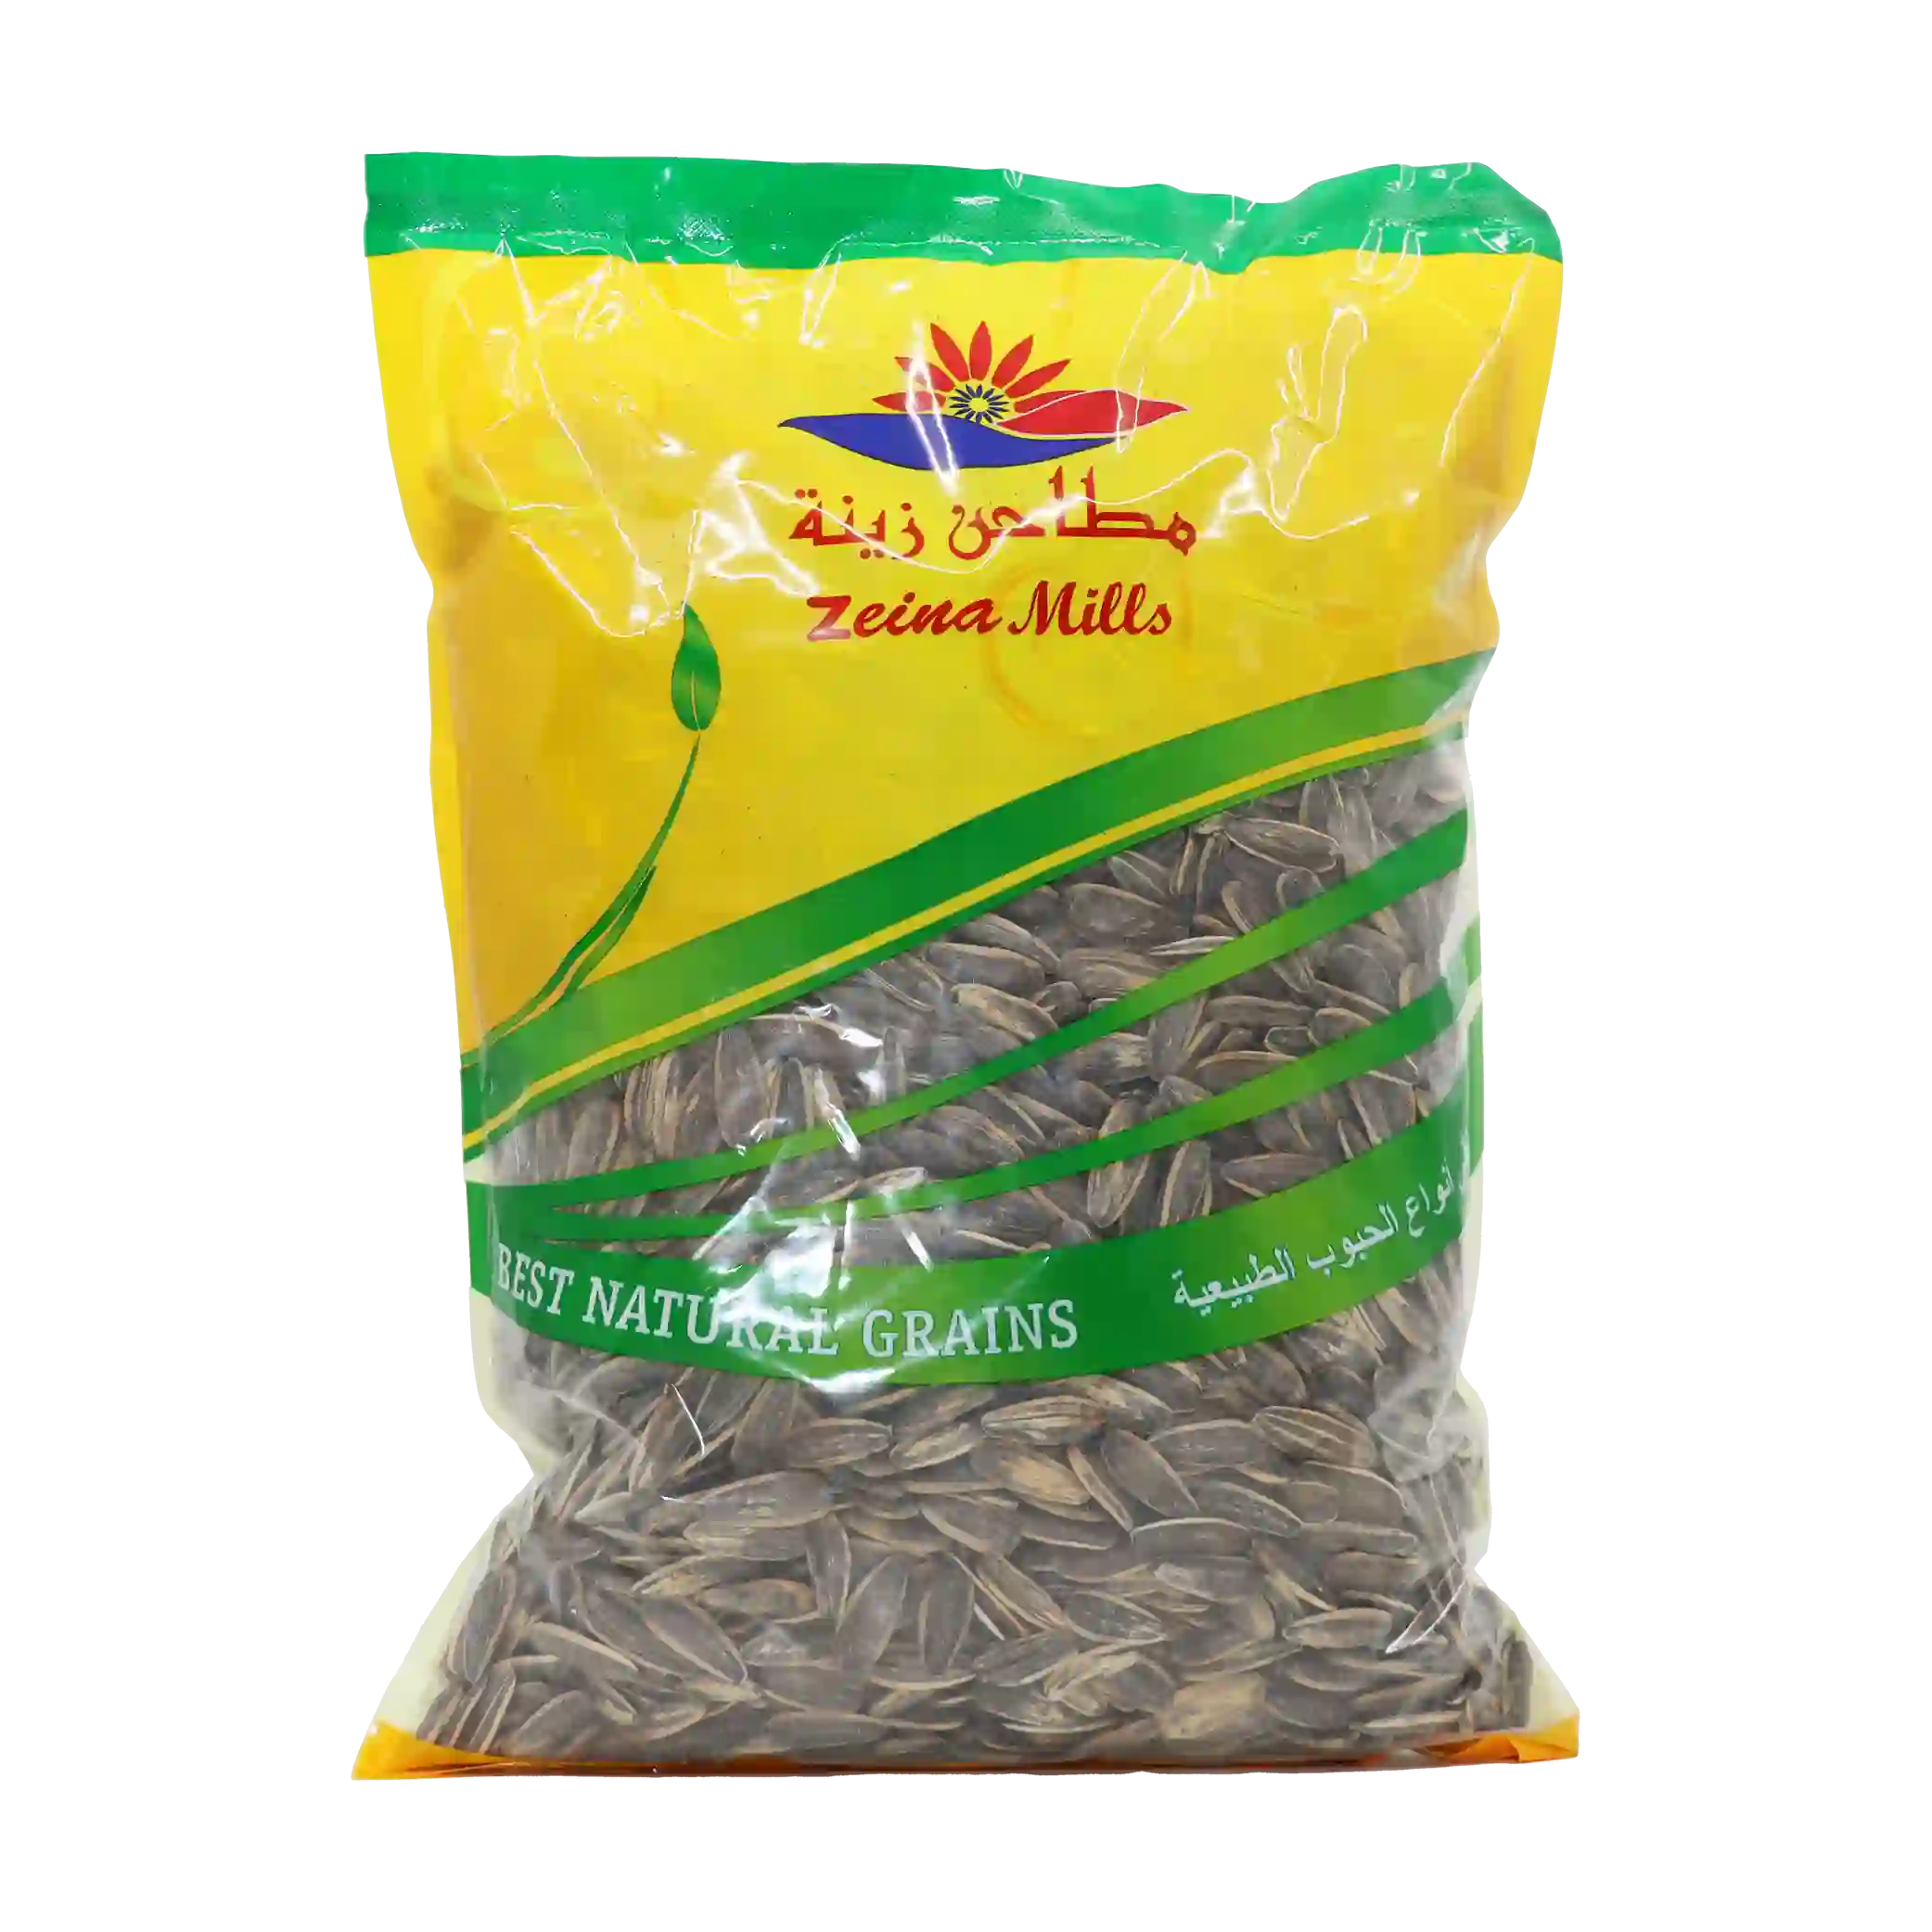 KAC - Roasted sunflower seeds - 1 kilo